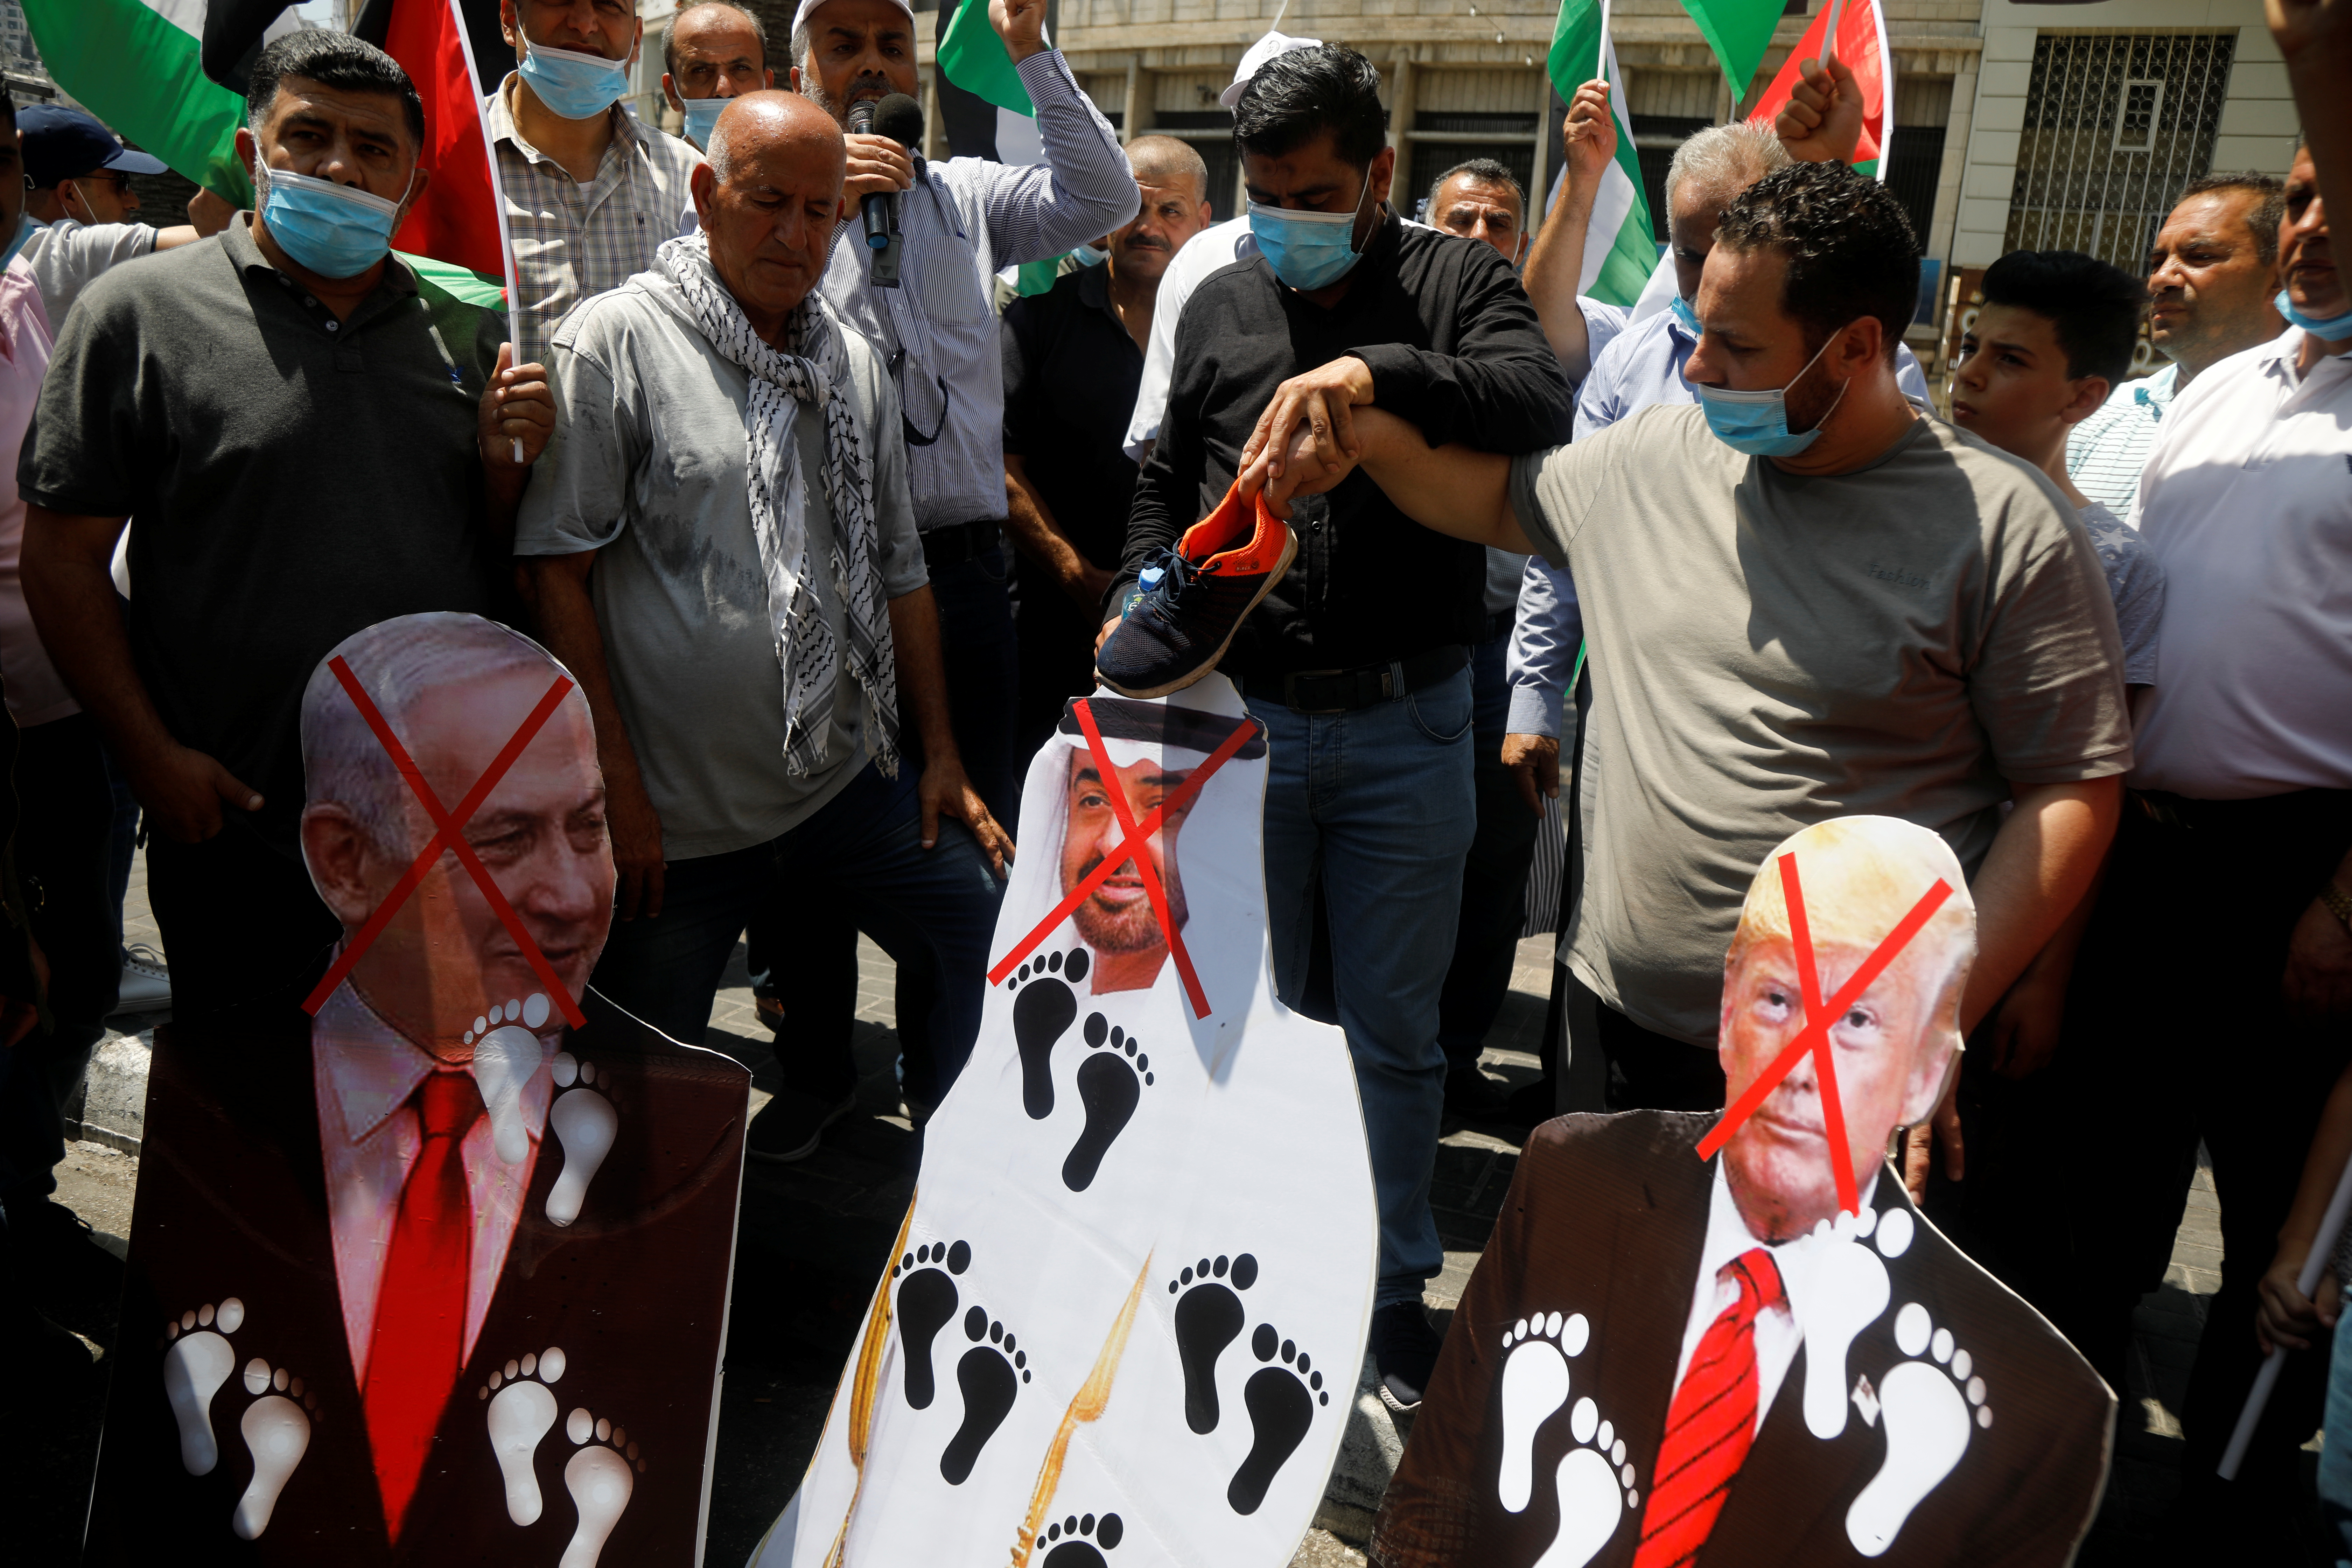 “ドナルド・トランプ合意”と自賛、イスラエル・UAE正常化の背景